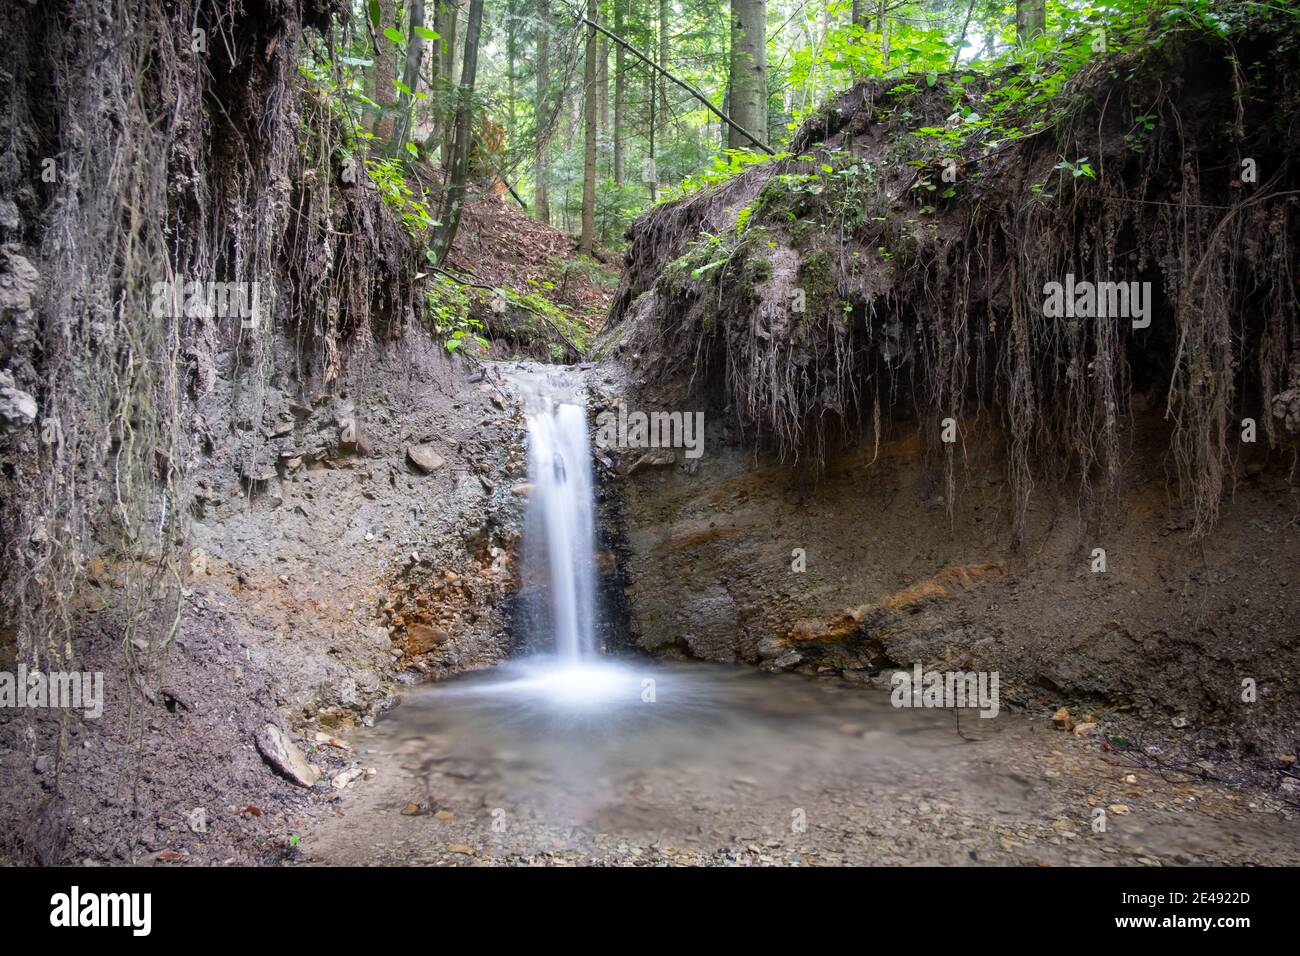 Clara corriente de montaña en el bosque exuberante. Paisaje salvaje con agua pura y raíces de árboles. Naturaleza backgtround Foto de stock